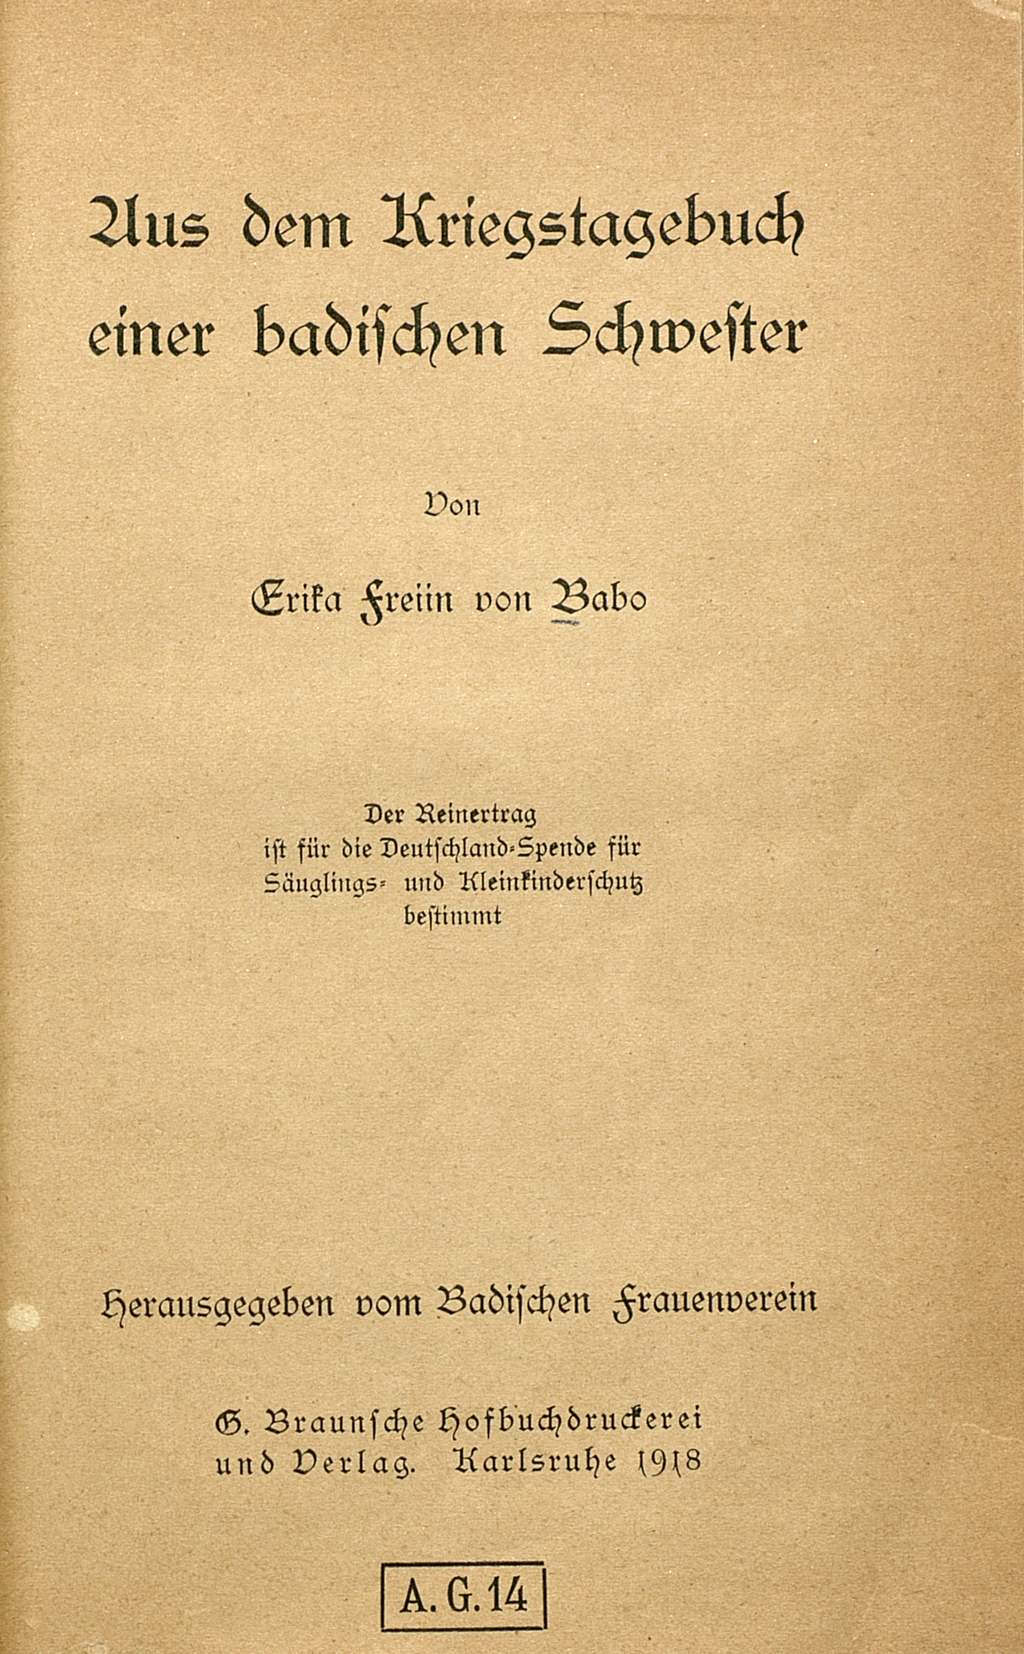 Zu sehen ist das Titelblatt der nachfolgenden Veröffentlichung: Babo, Erika von: Aus dem Kriegstagebuch einer badischen Schwester. Hrsg. vom Badischen Frauenverein. Karlsruhe: Braun, 1918.